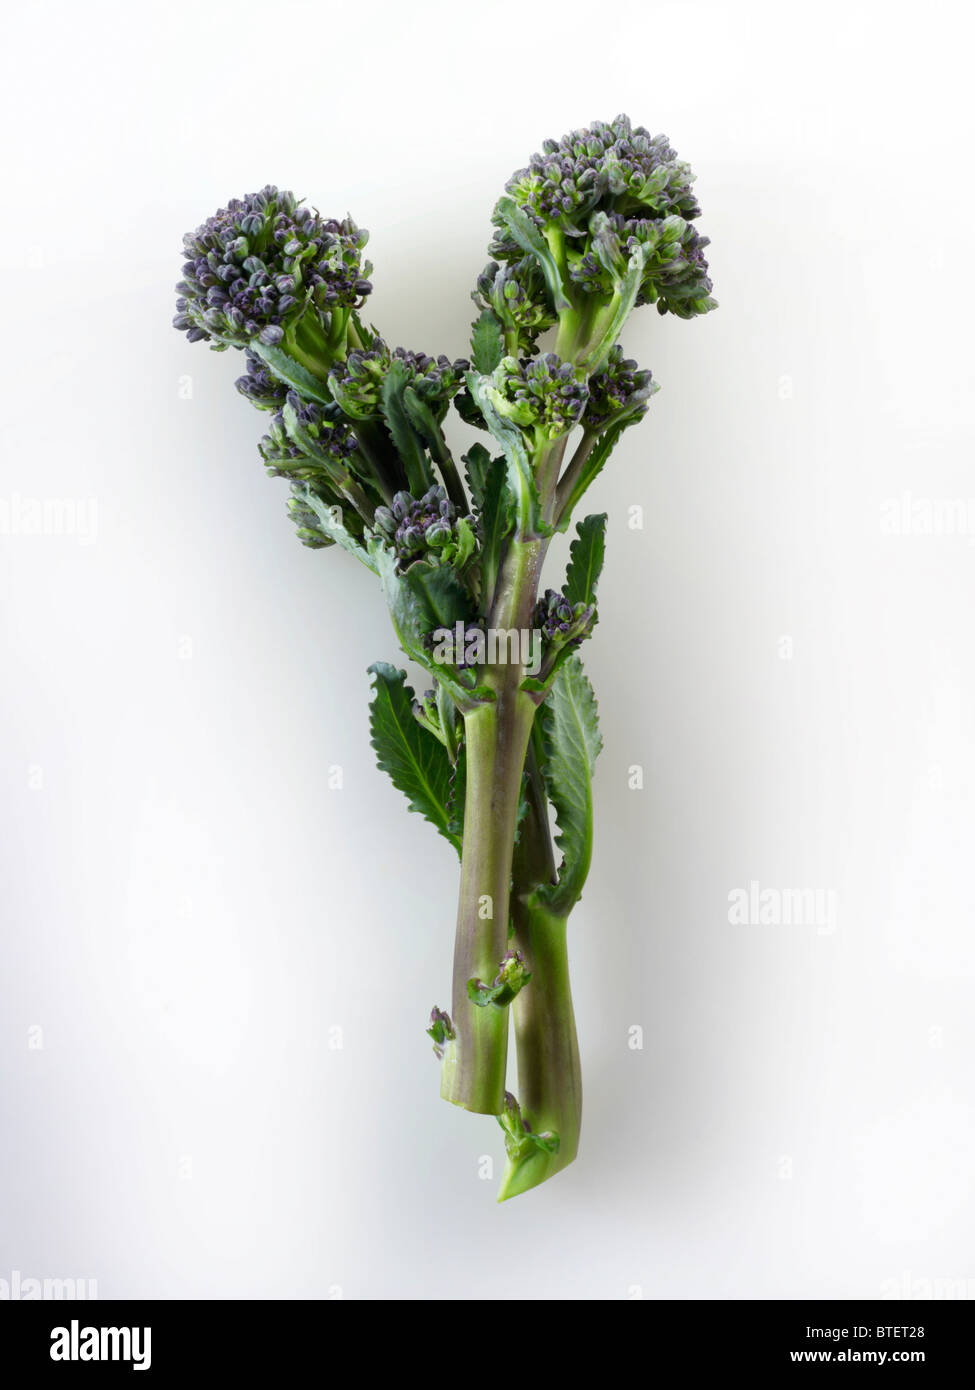 Viola fresca broccoletti contro uno sfondo bianco Foto Stock